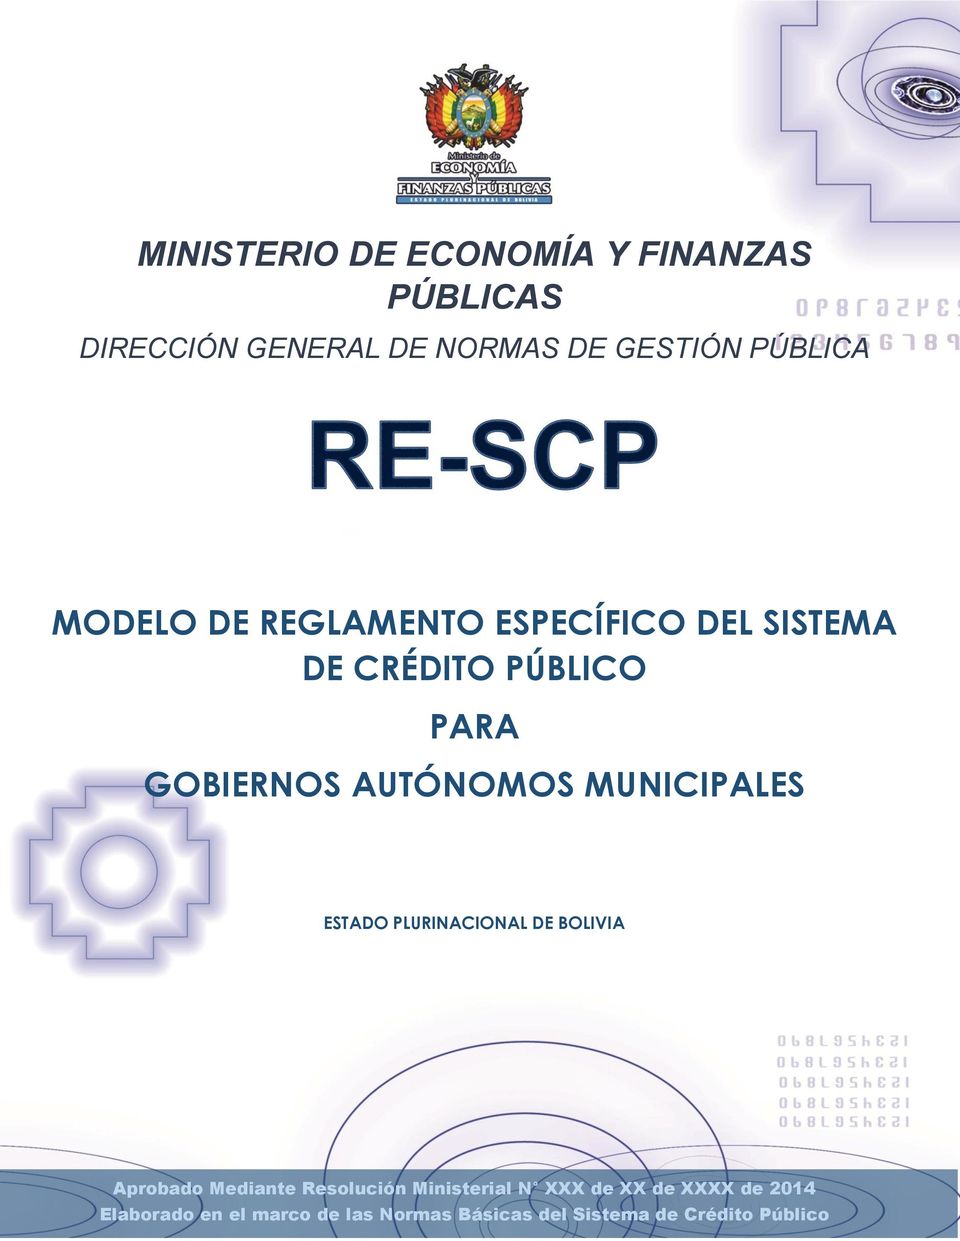 MUNICIPALES ESTADO PLURINACIONAL DE BOLIVIA Aprobado Mediante Resolución Ministerial N XXX